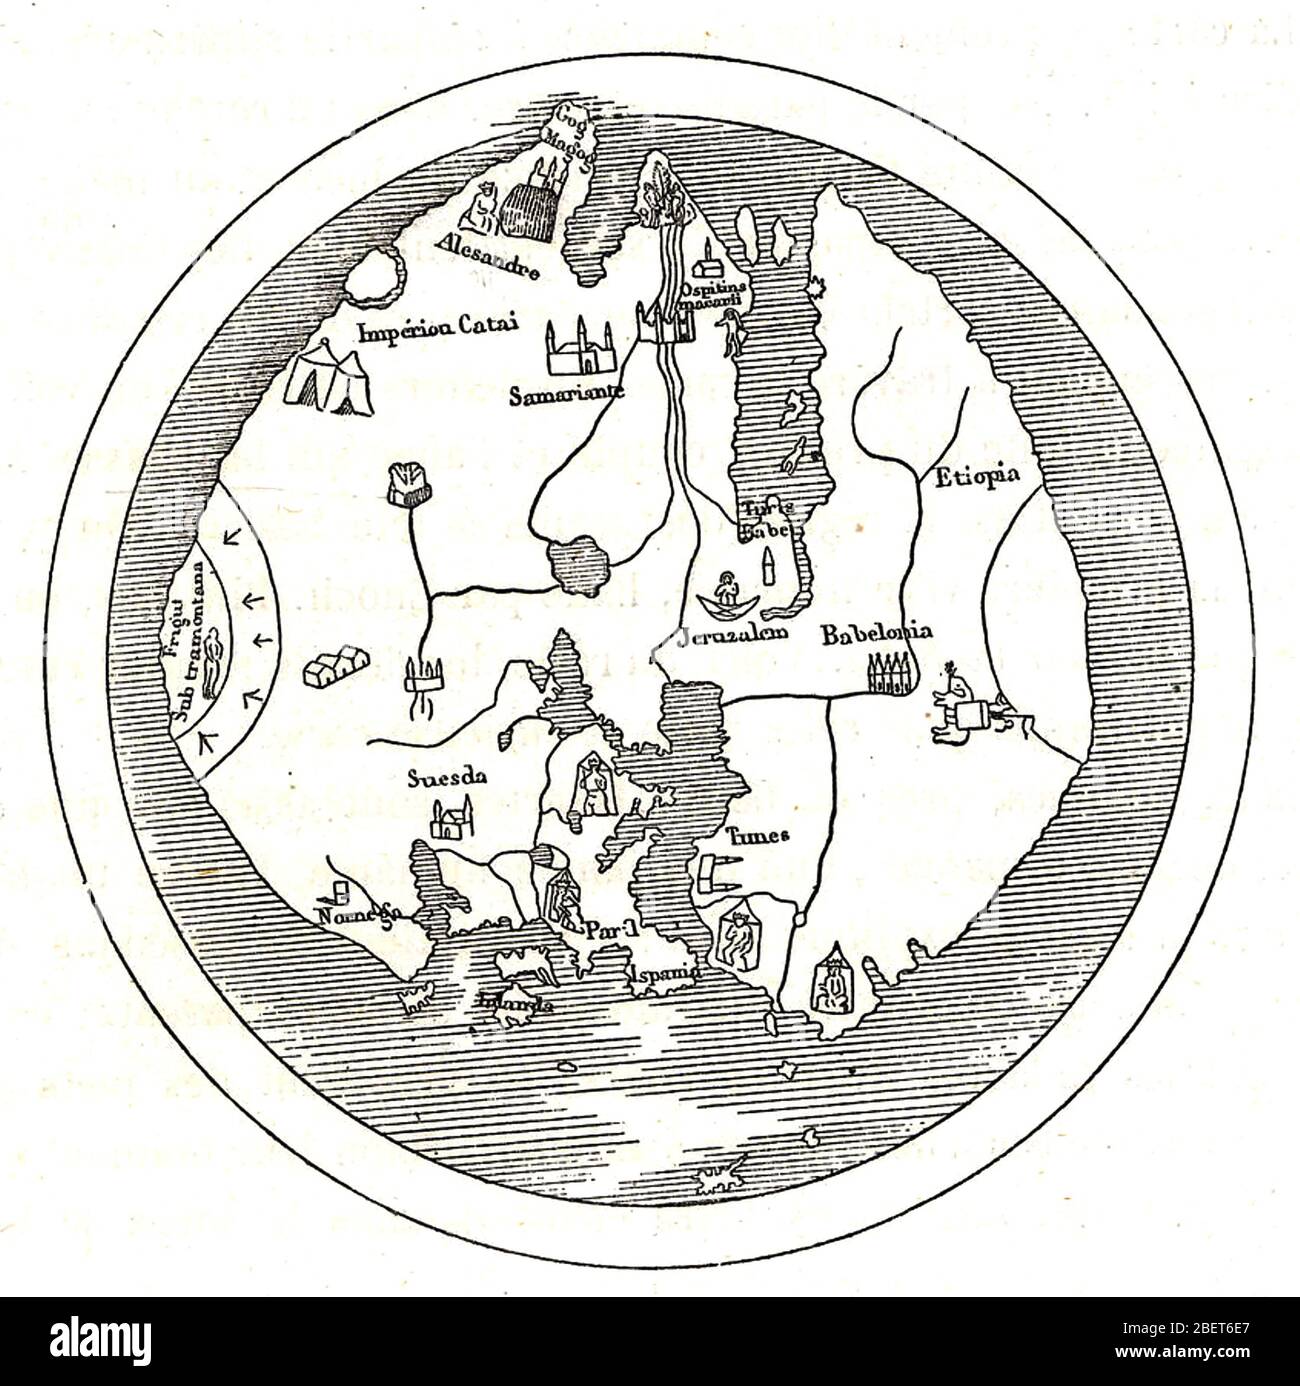 ANDREA bianco WORLD MAP una chiara versione della mappa colorata creata dal marinaio veneziano e cartografo del XV secolo. Foto Stock